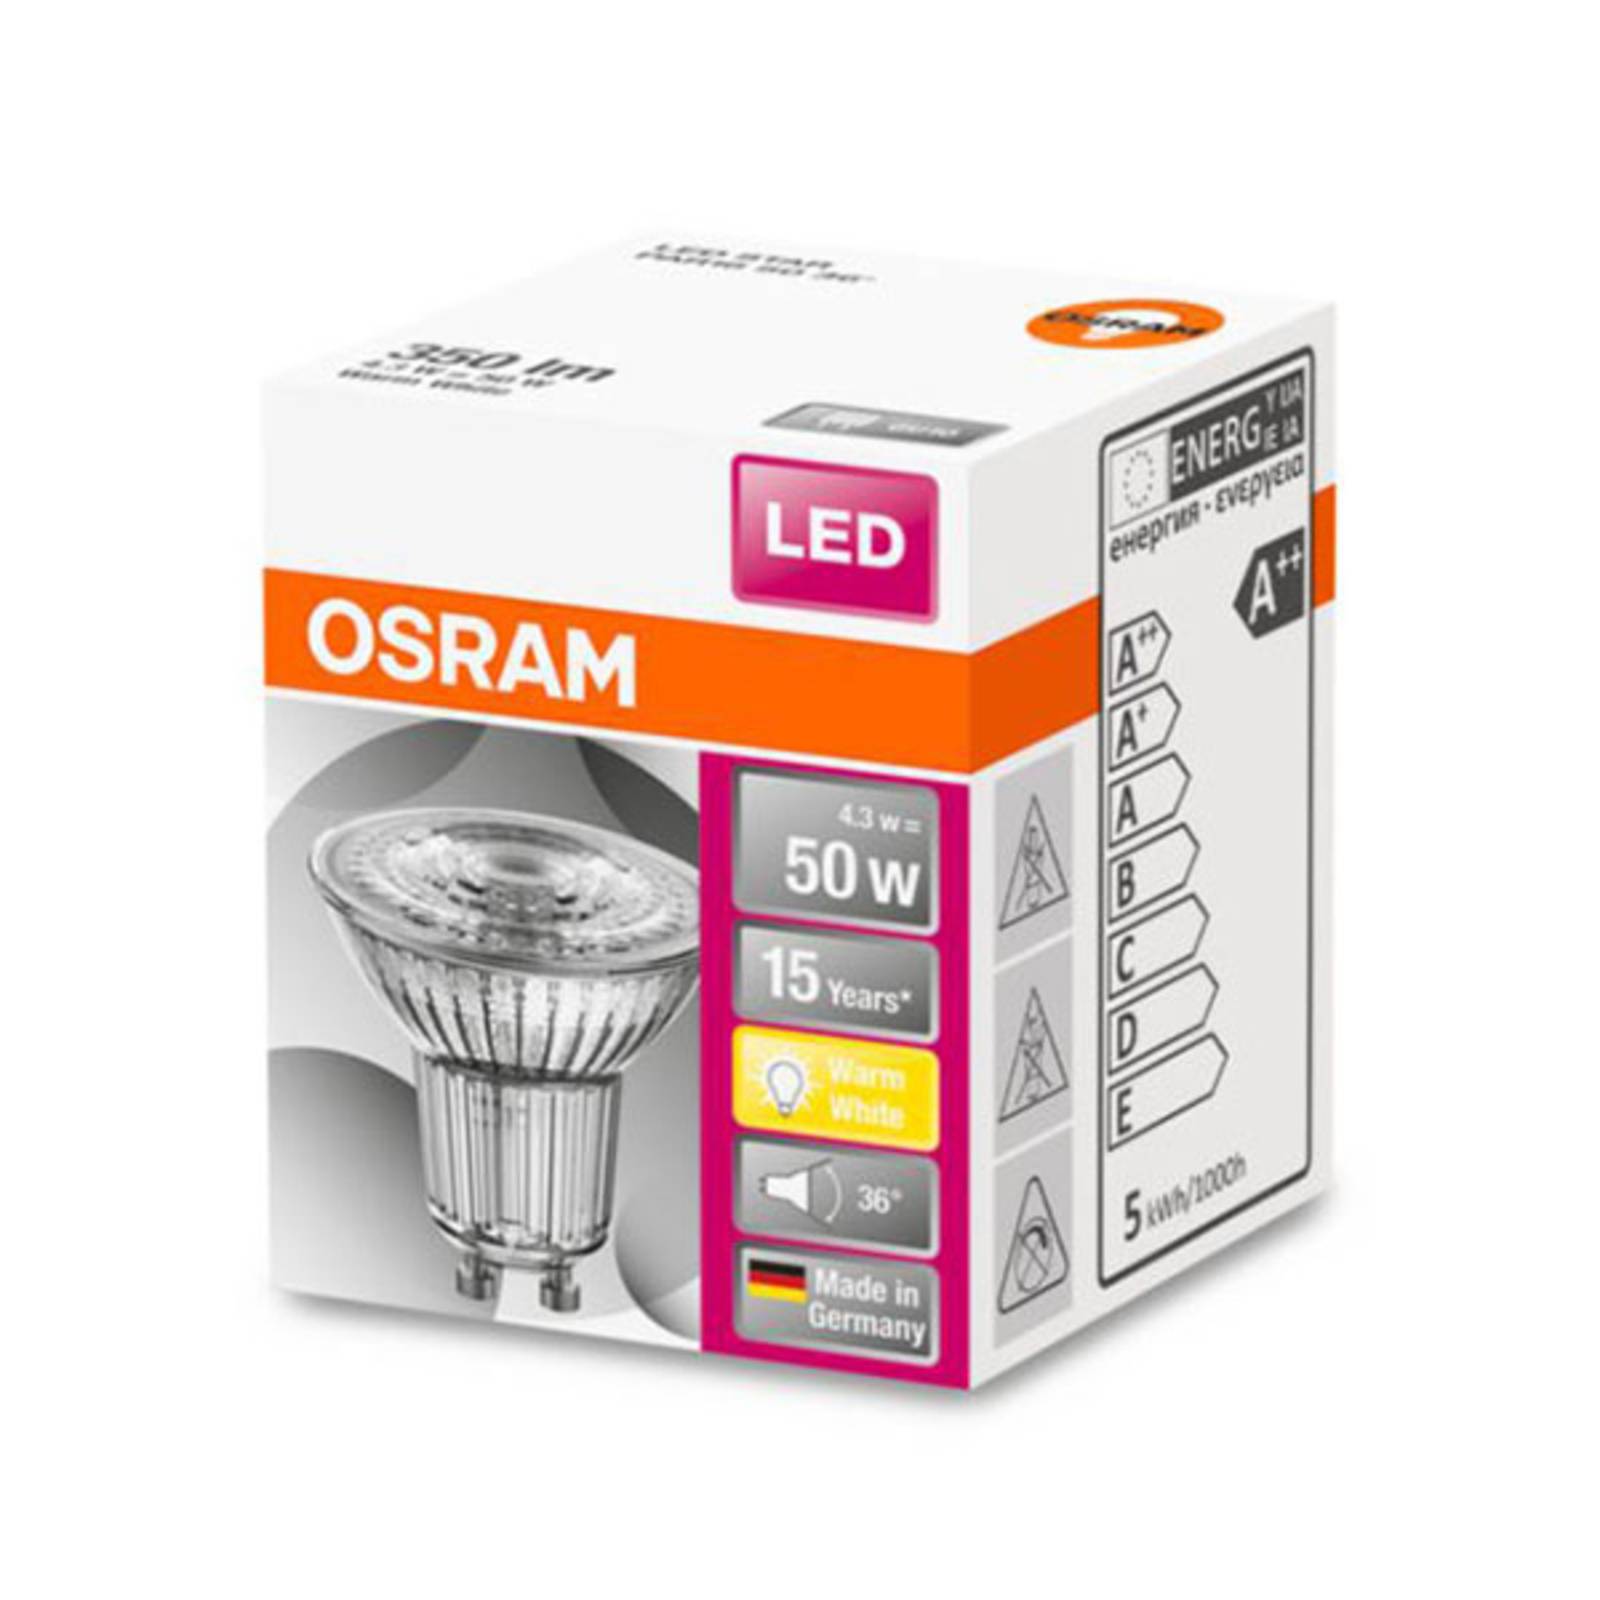 OSRAM Star LED-reflektor GU10 4,3 W varmhvid 36°